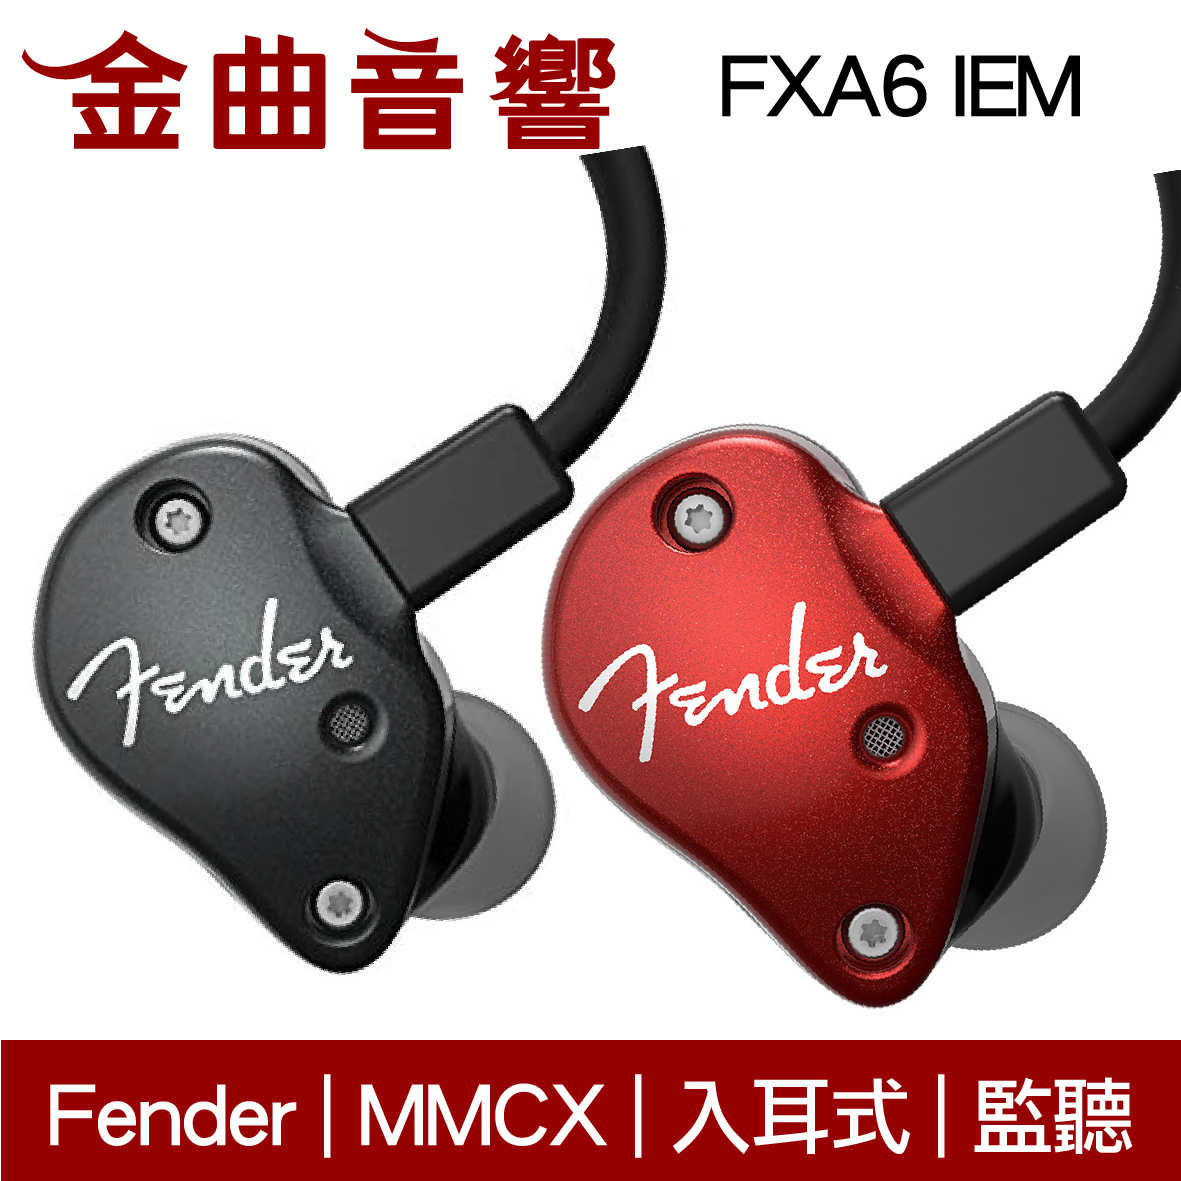 Fender FXA6 IEM 兩色可選 入耳式 監聽級 耳機 | 金曲音響